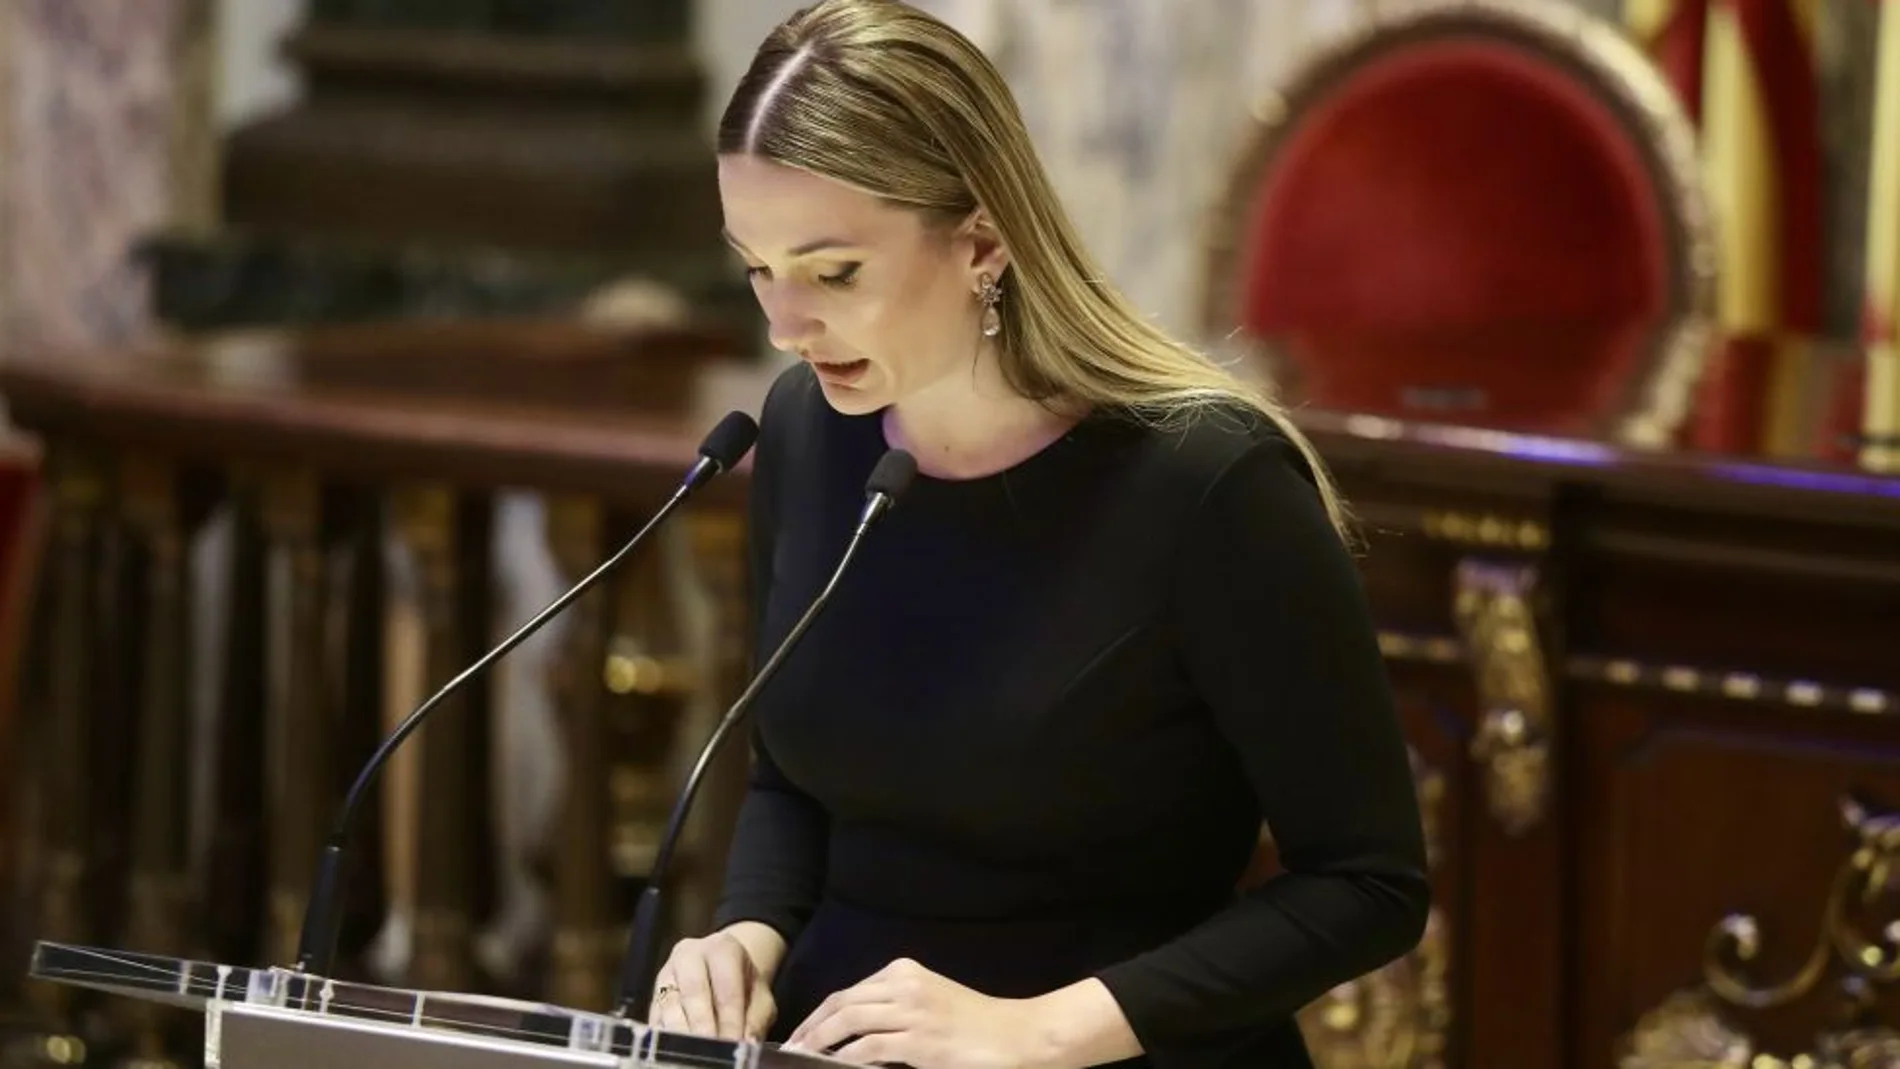 La Fallera Mayor de Valencia, Laura Mengó